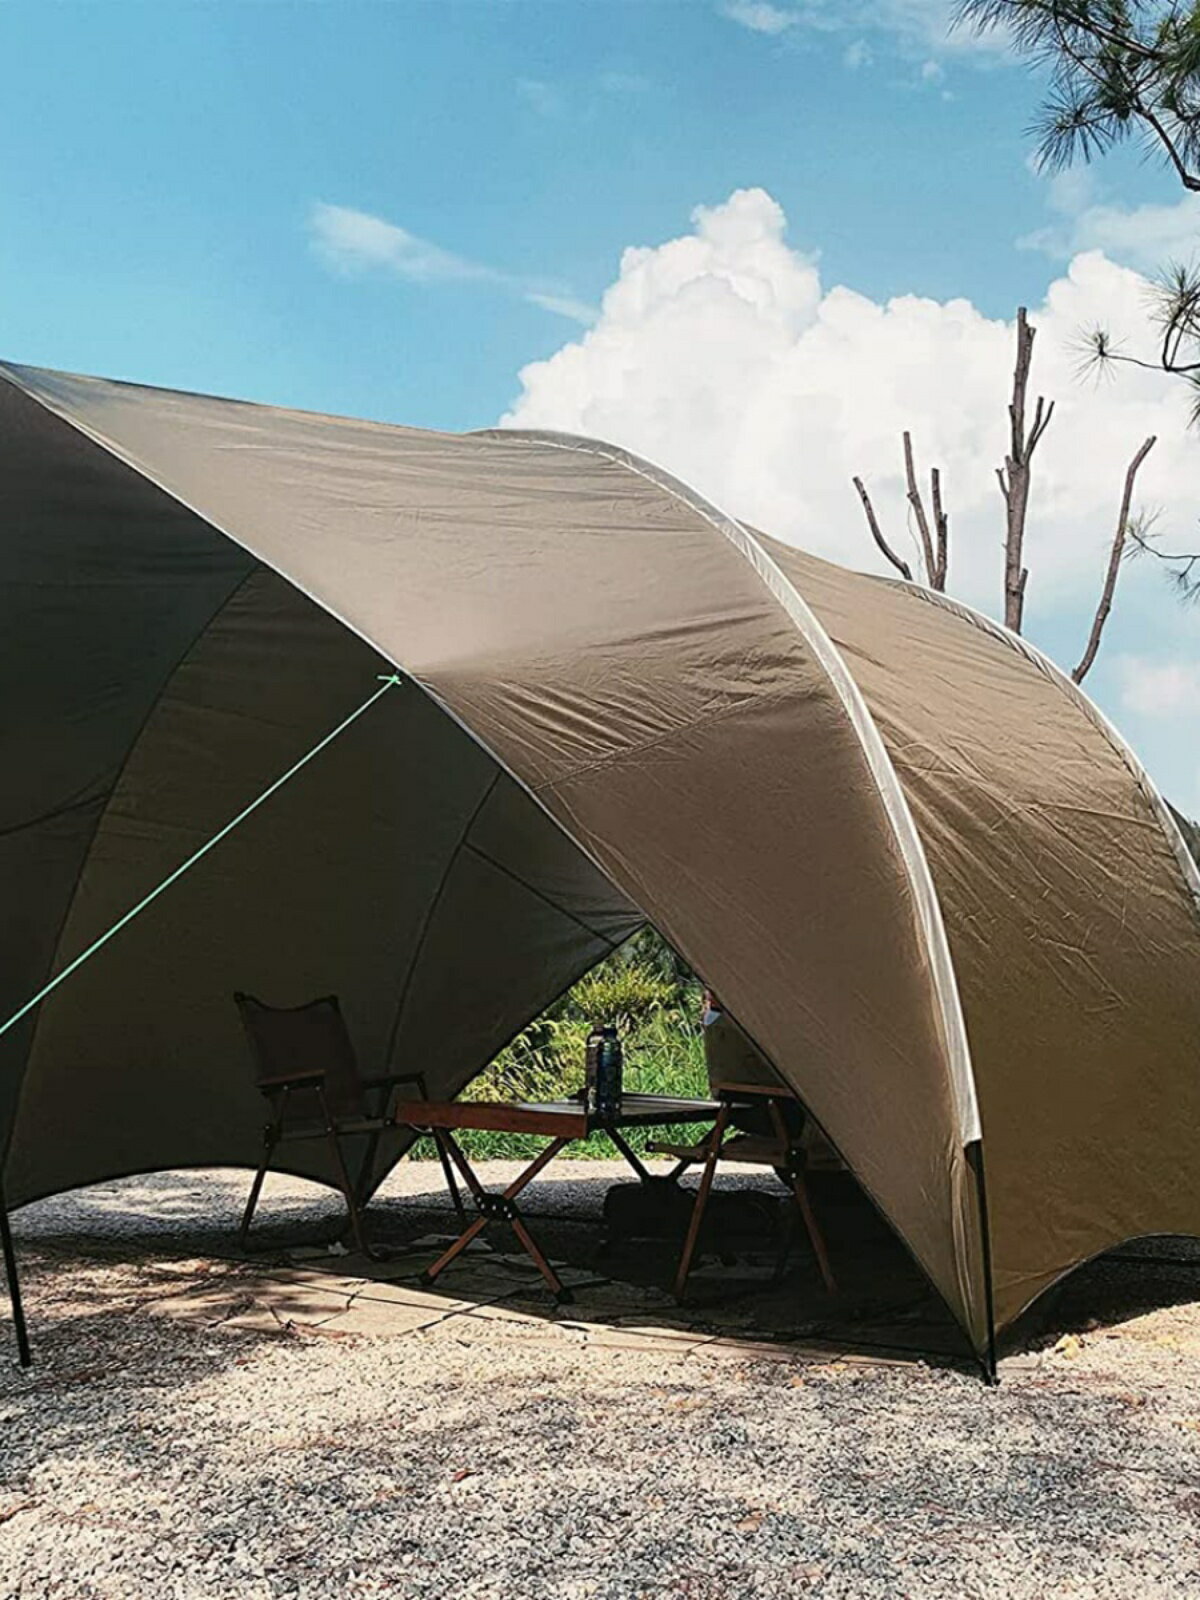 戶外露營車尾天幕帳篷,野營車尾帳篷,車后延伸一體帳篷可單獨使用